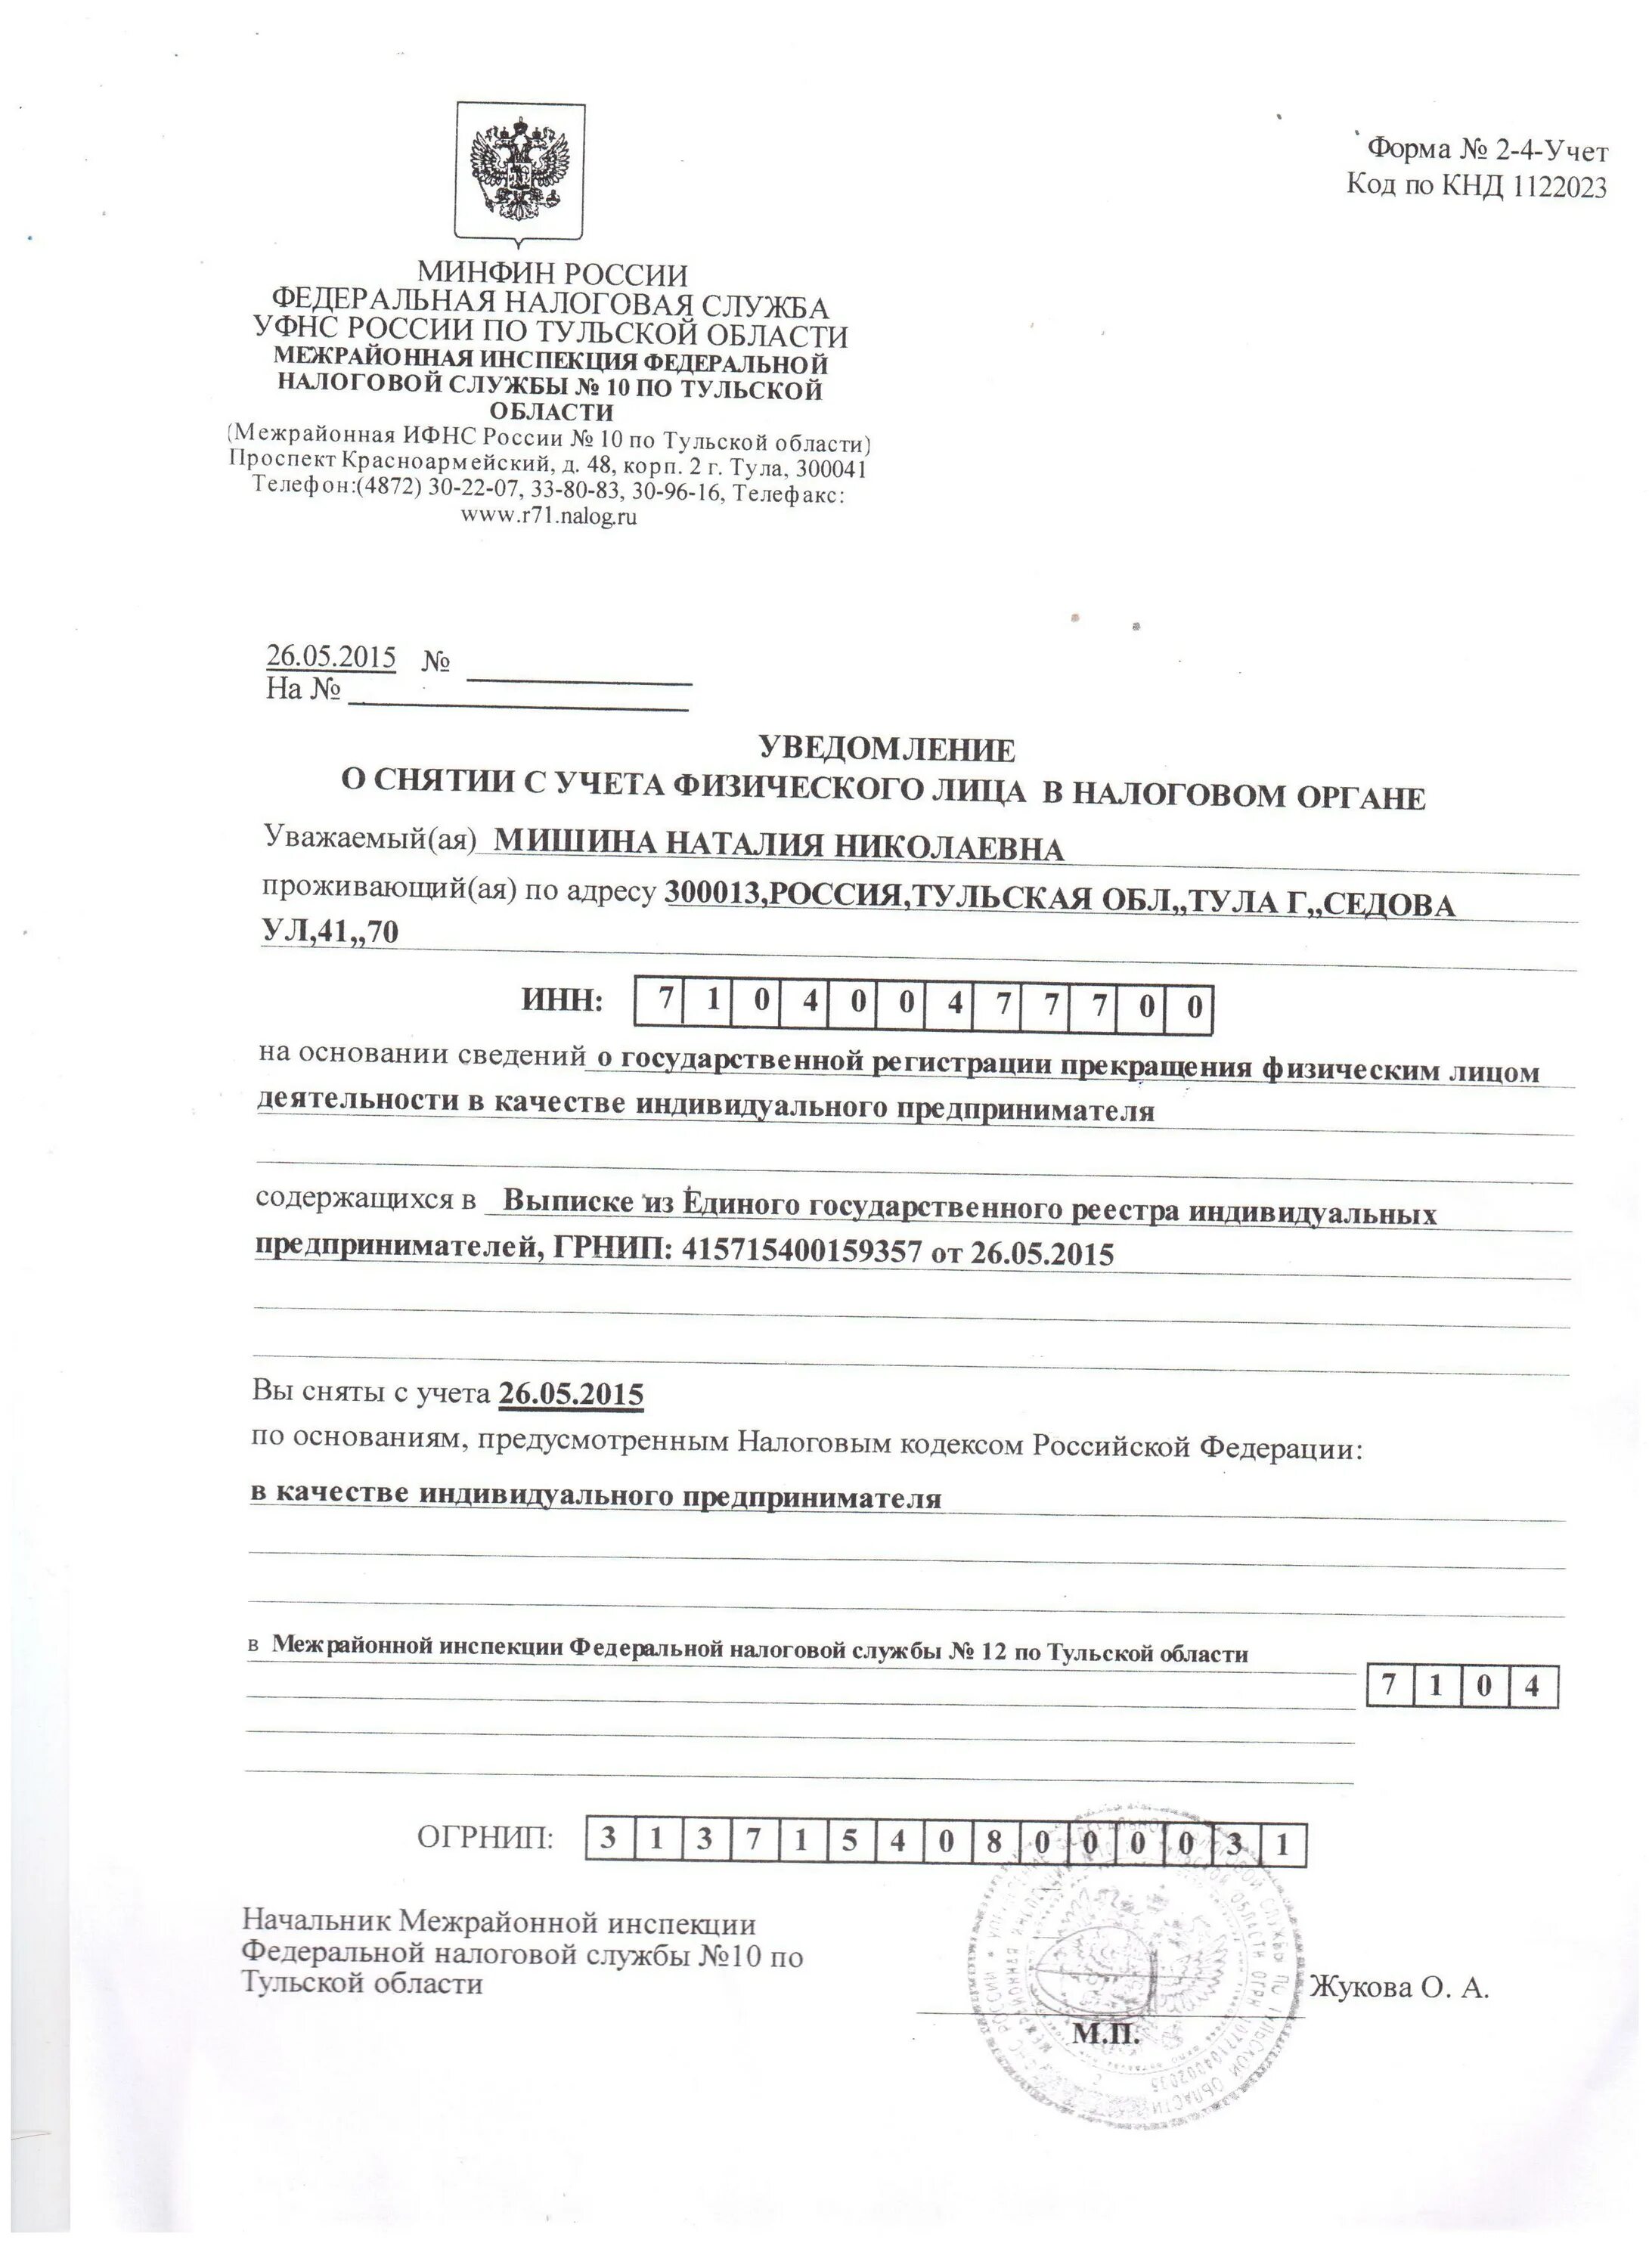 Печать налоговой службы Тульской. Бланк налоговой службы г. Новосибирск. Сайт 25 налоговой